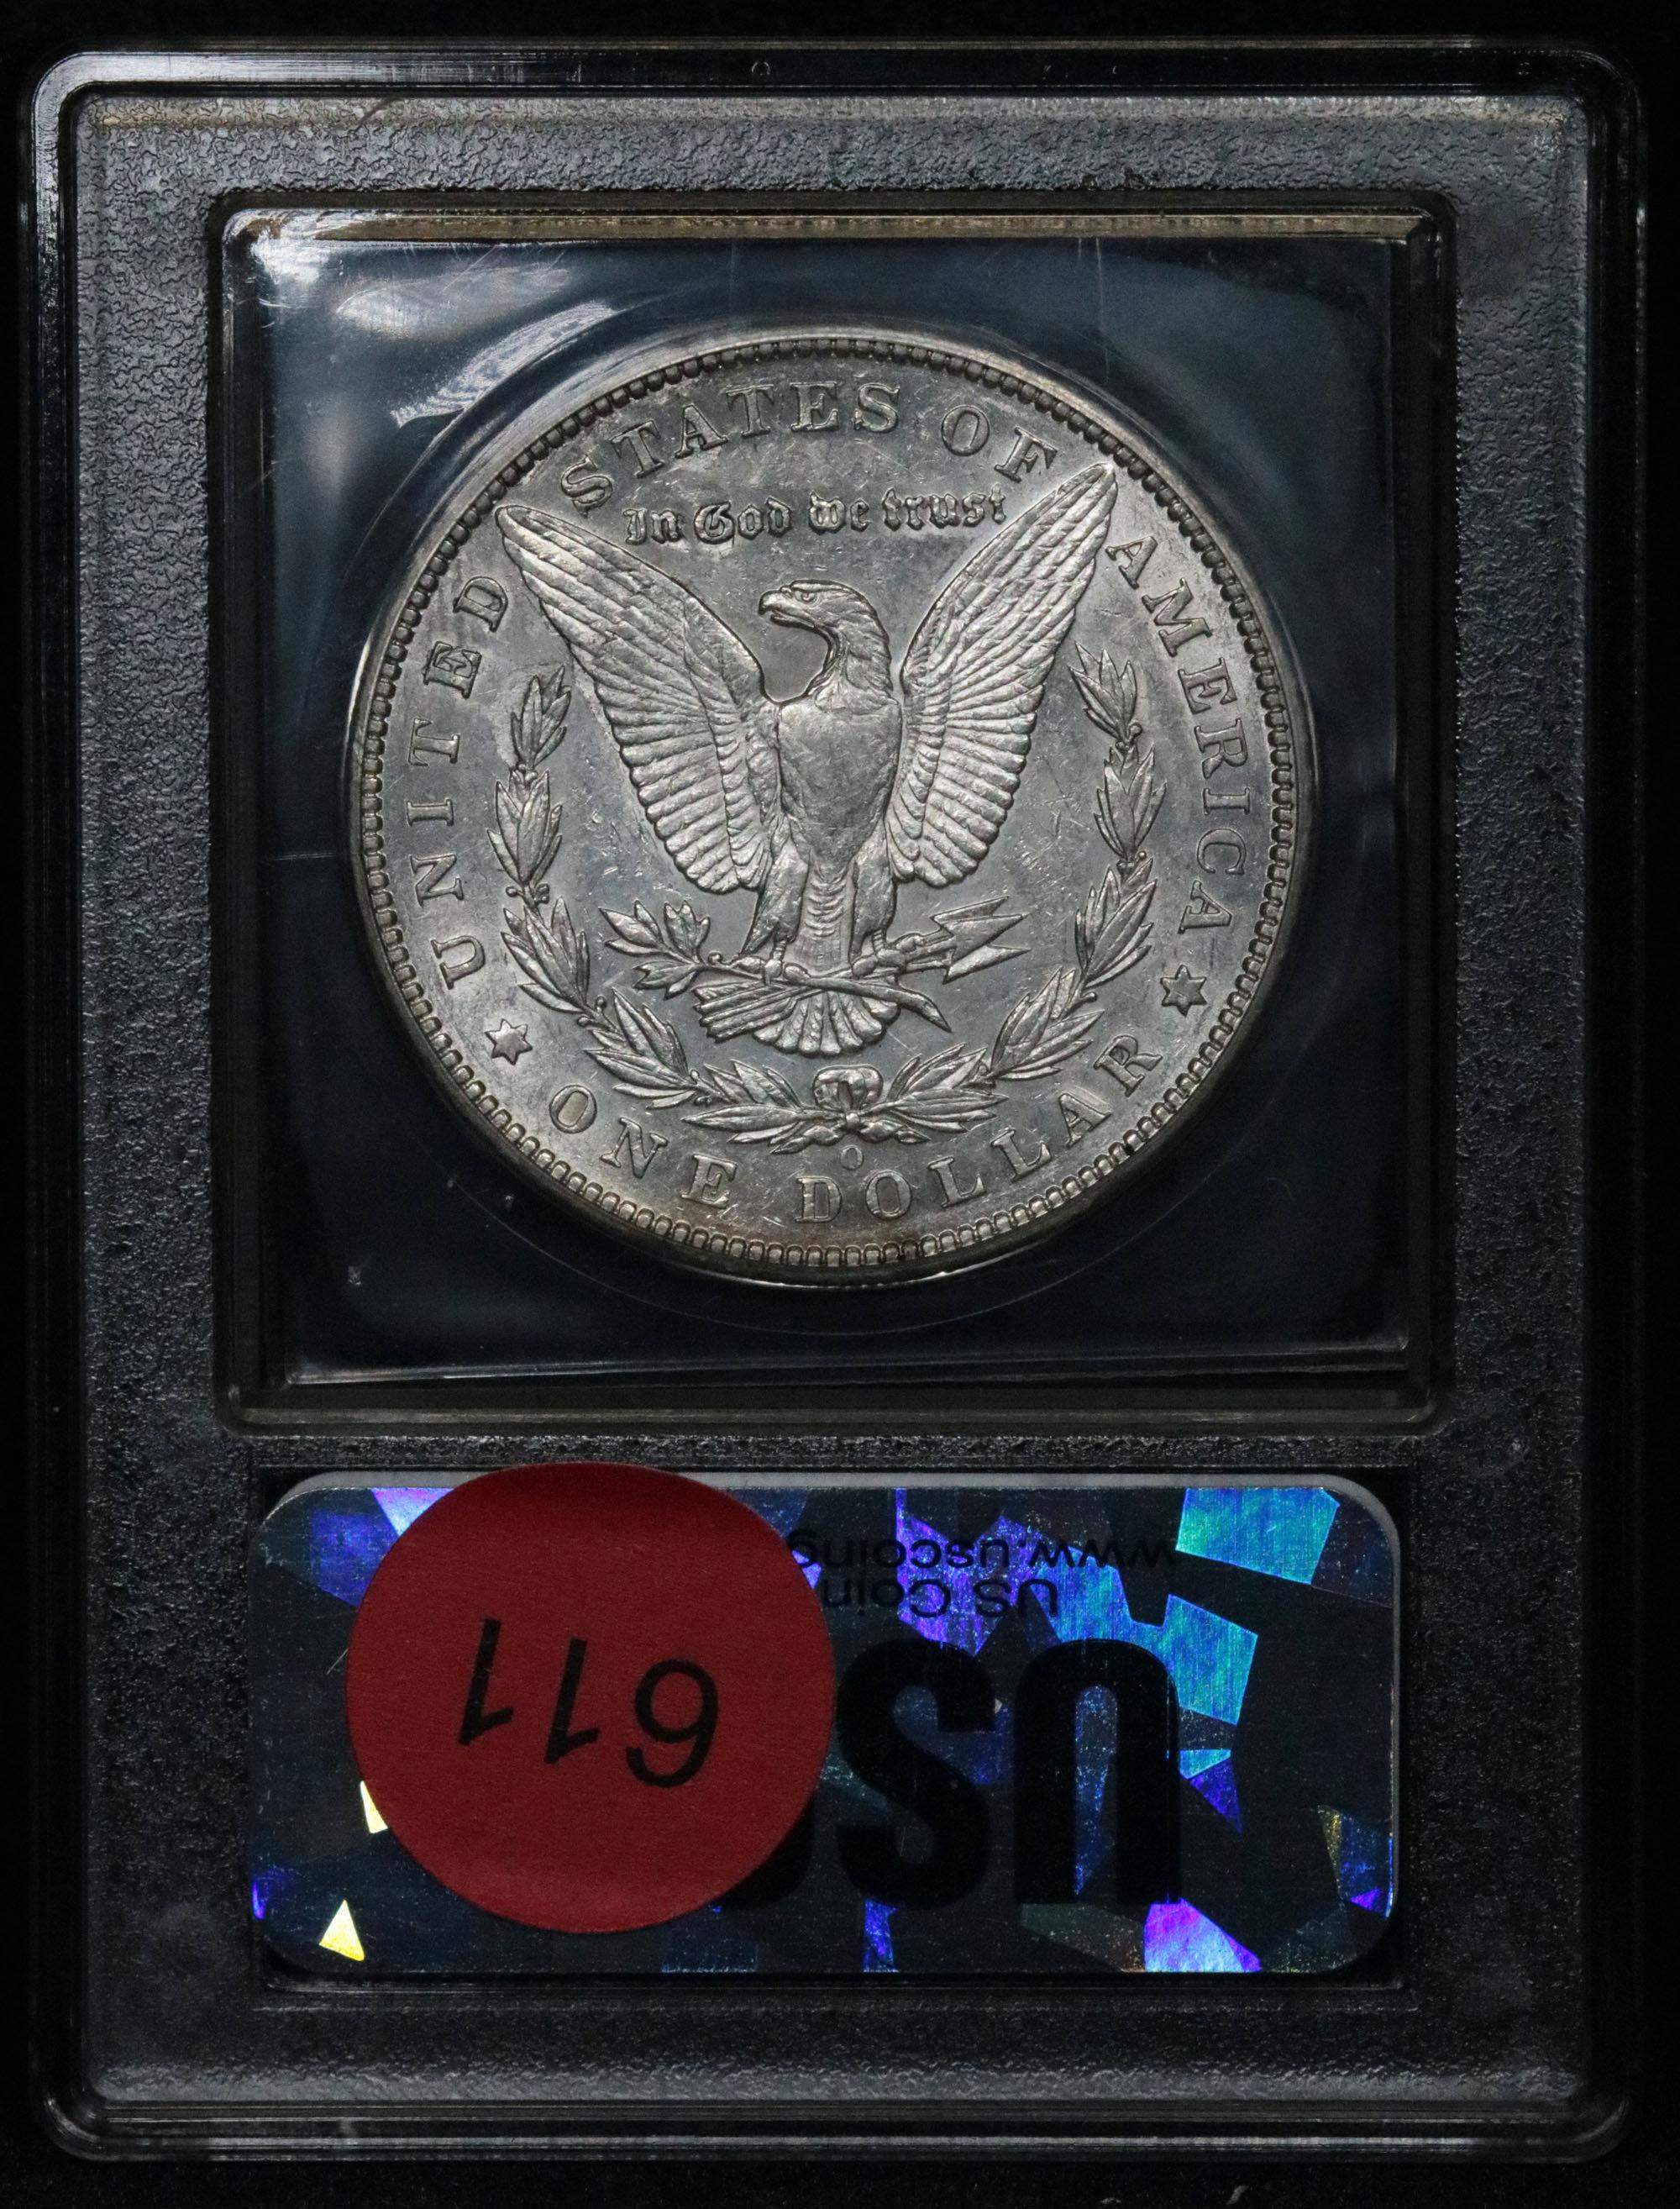 ***Auction Highlight*** Key date 1894-o Morgan Dollar $1 Graded BU+ by USCG (fc)